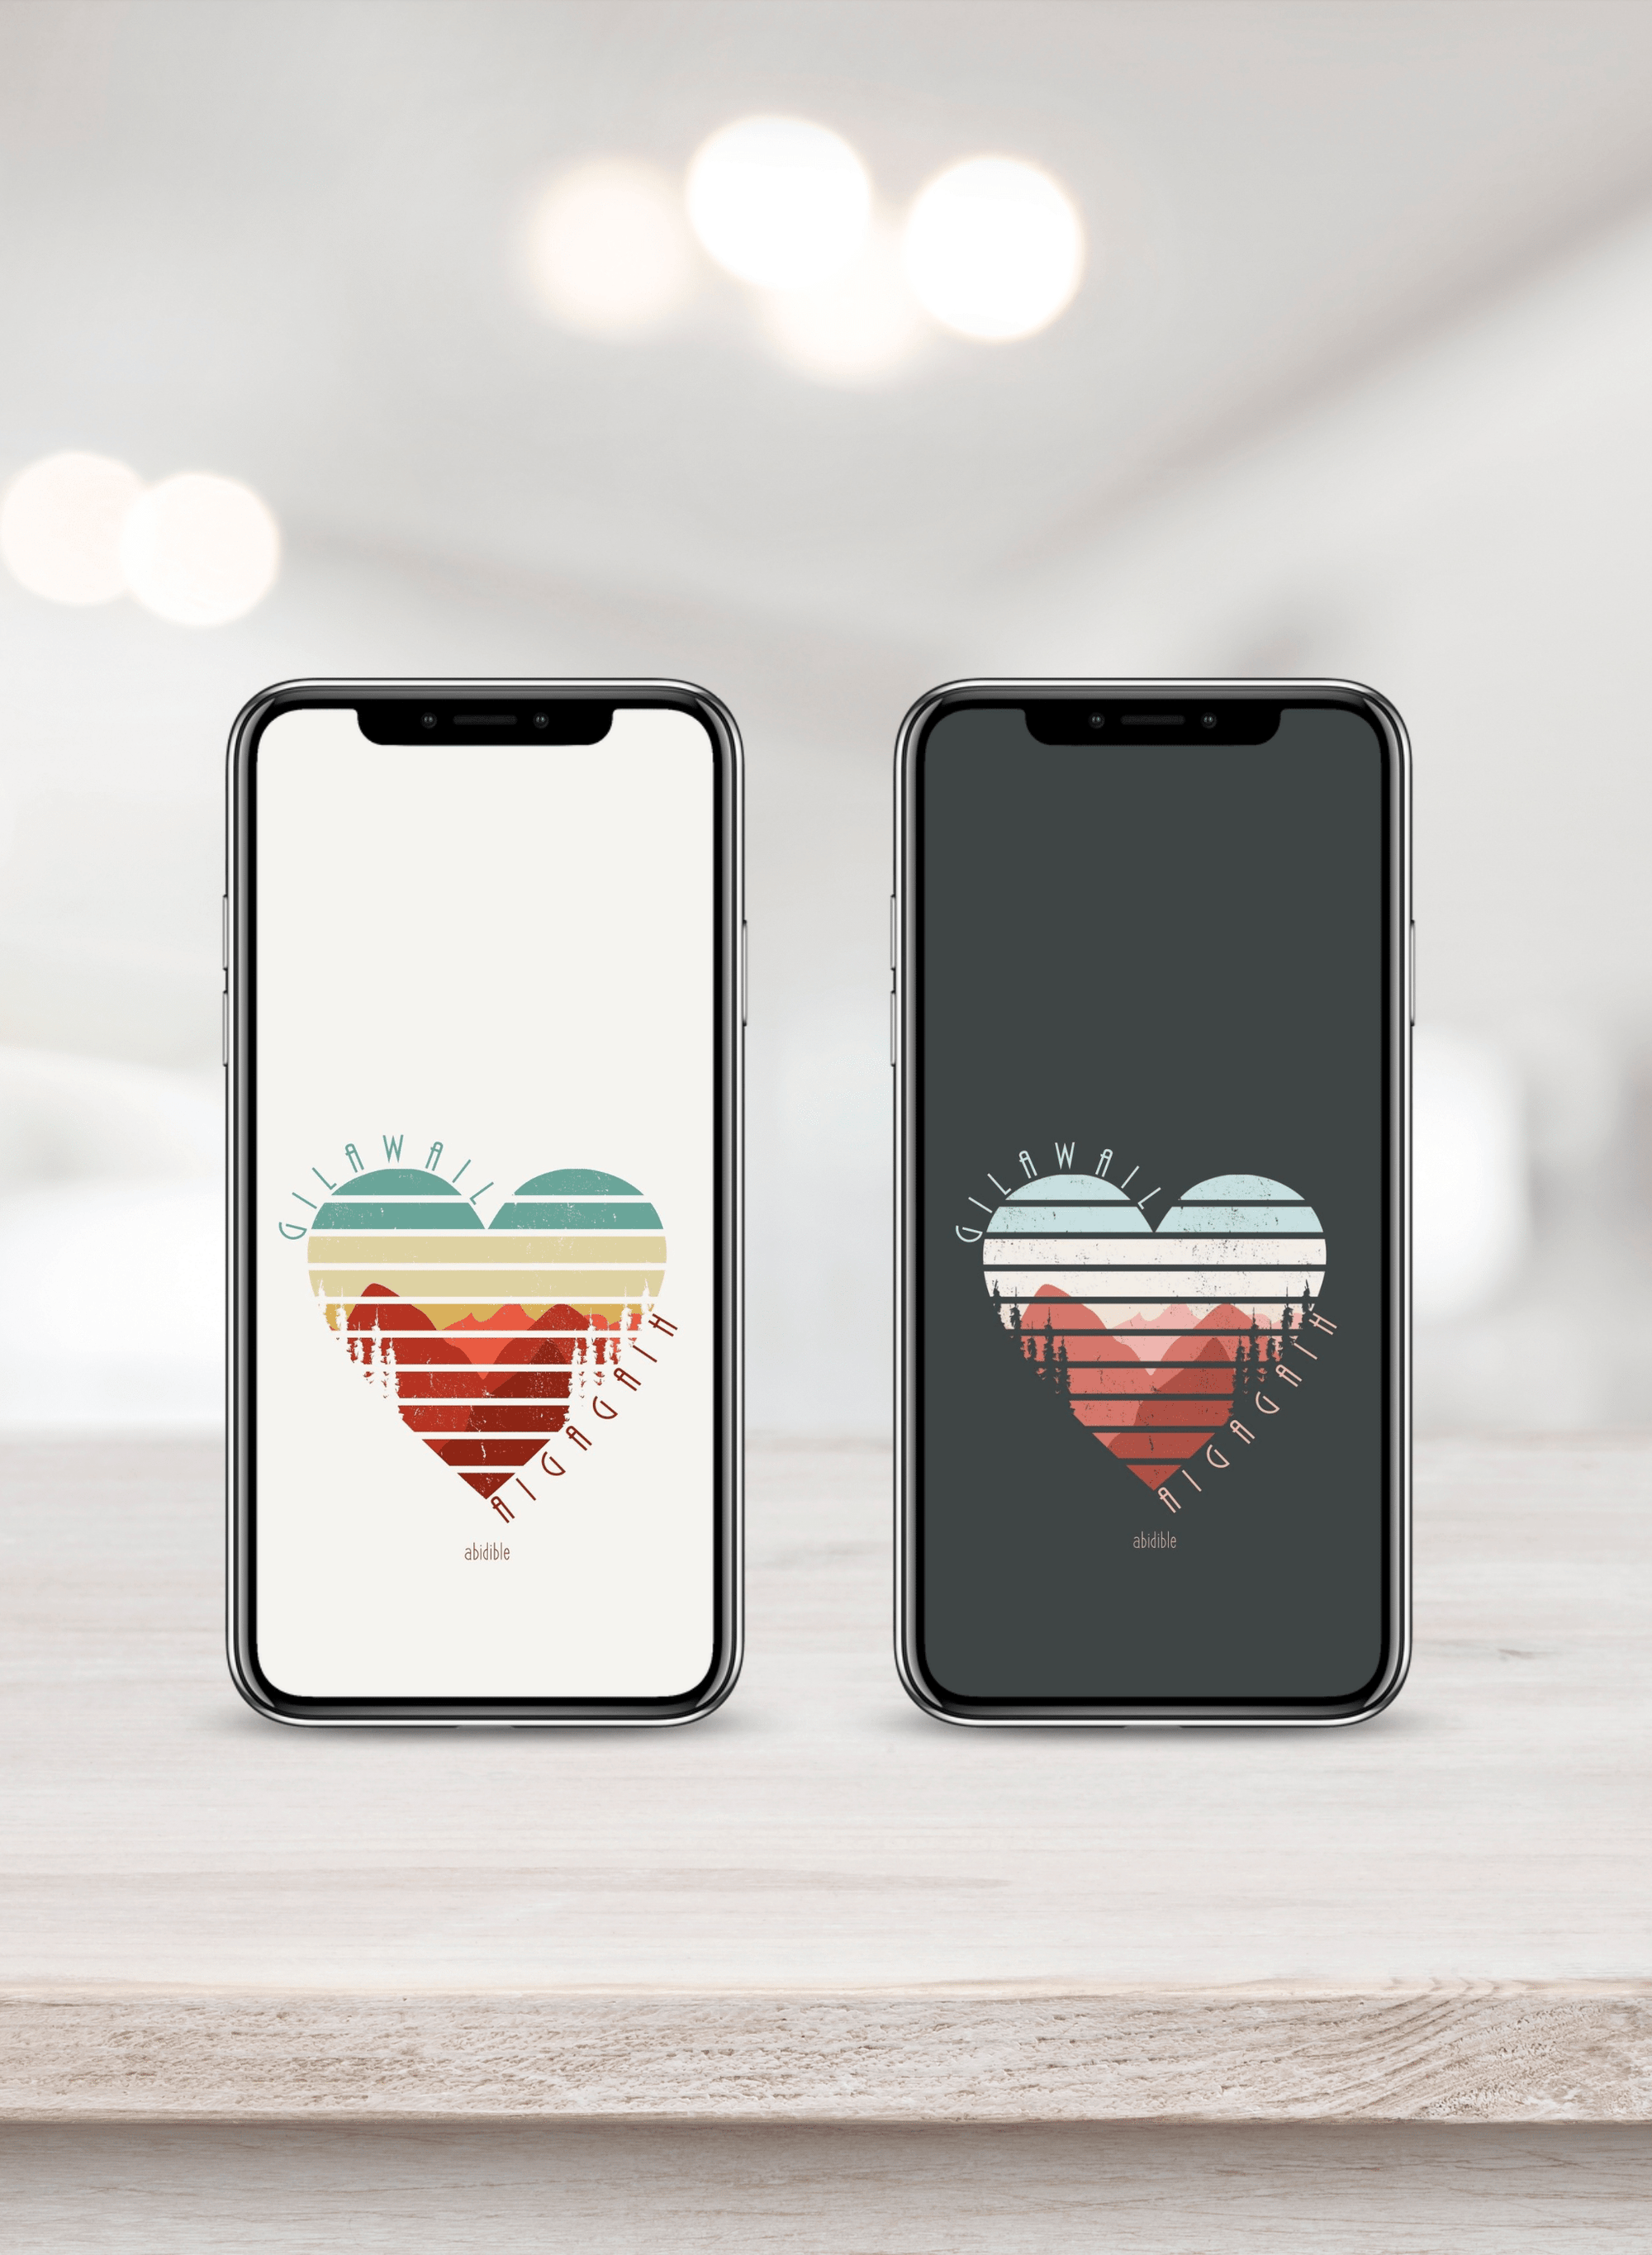 "God is Love" Phone Wallpaper Digital Artwork abidible 